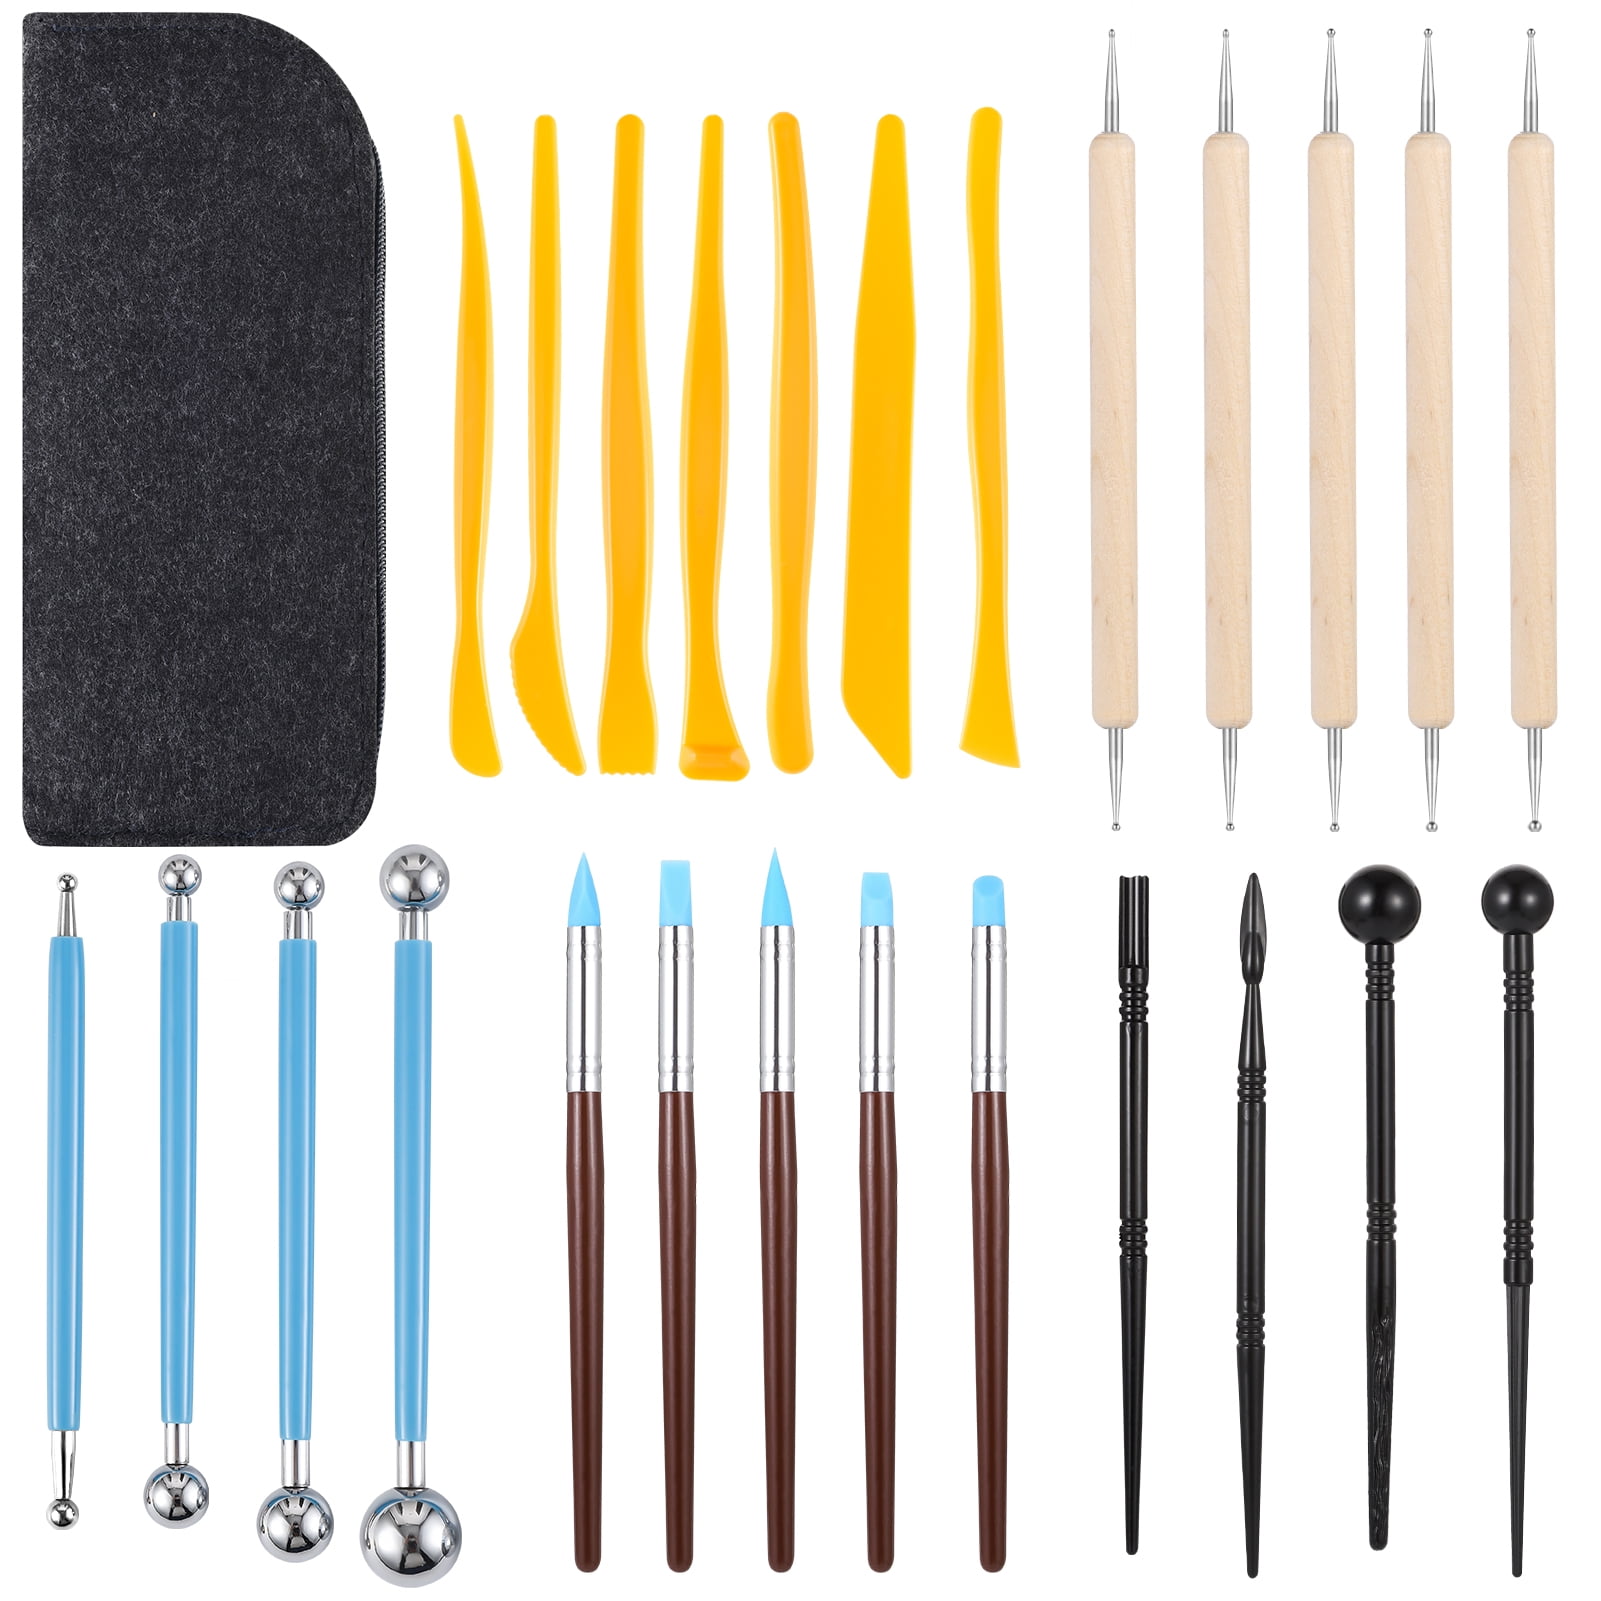 Clay Tool Kits